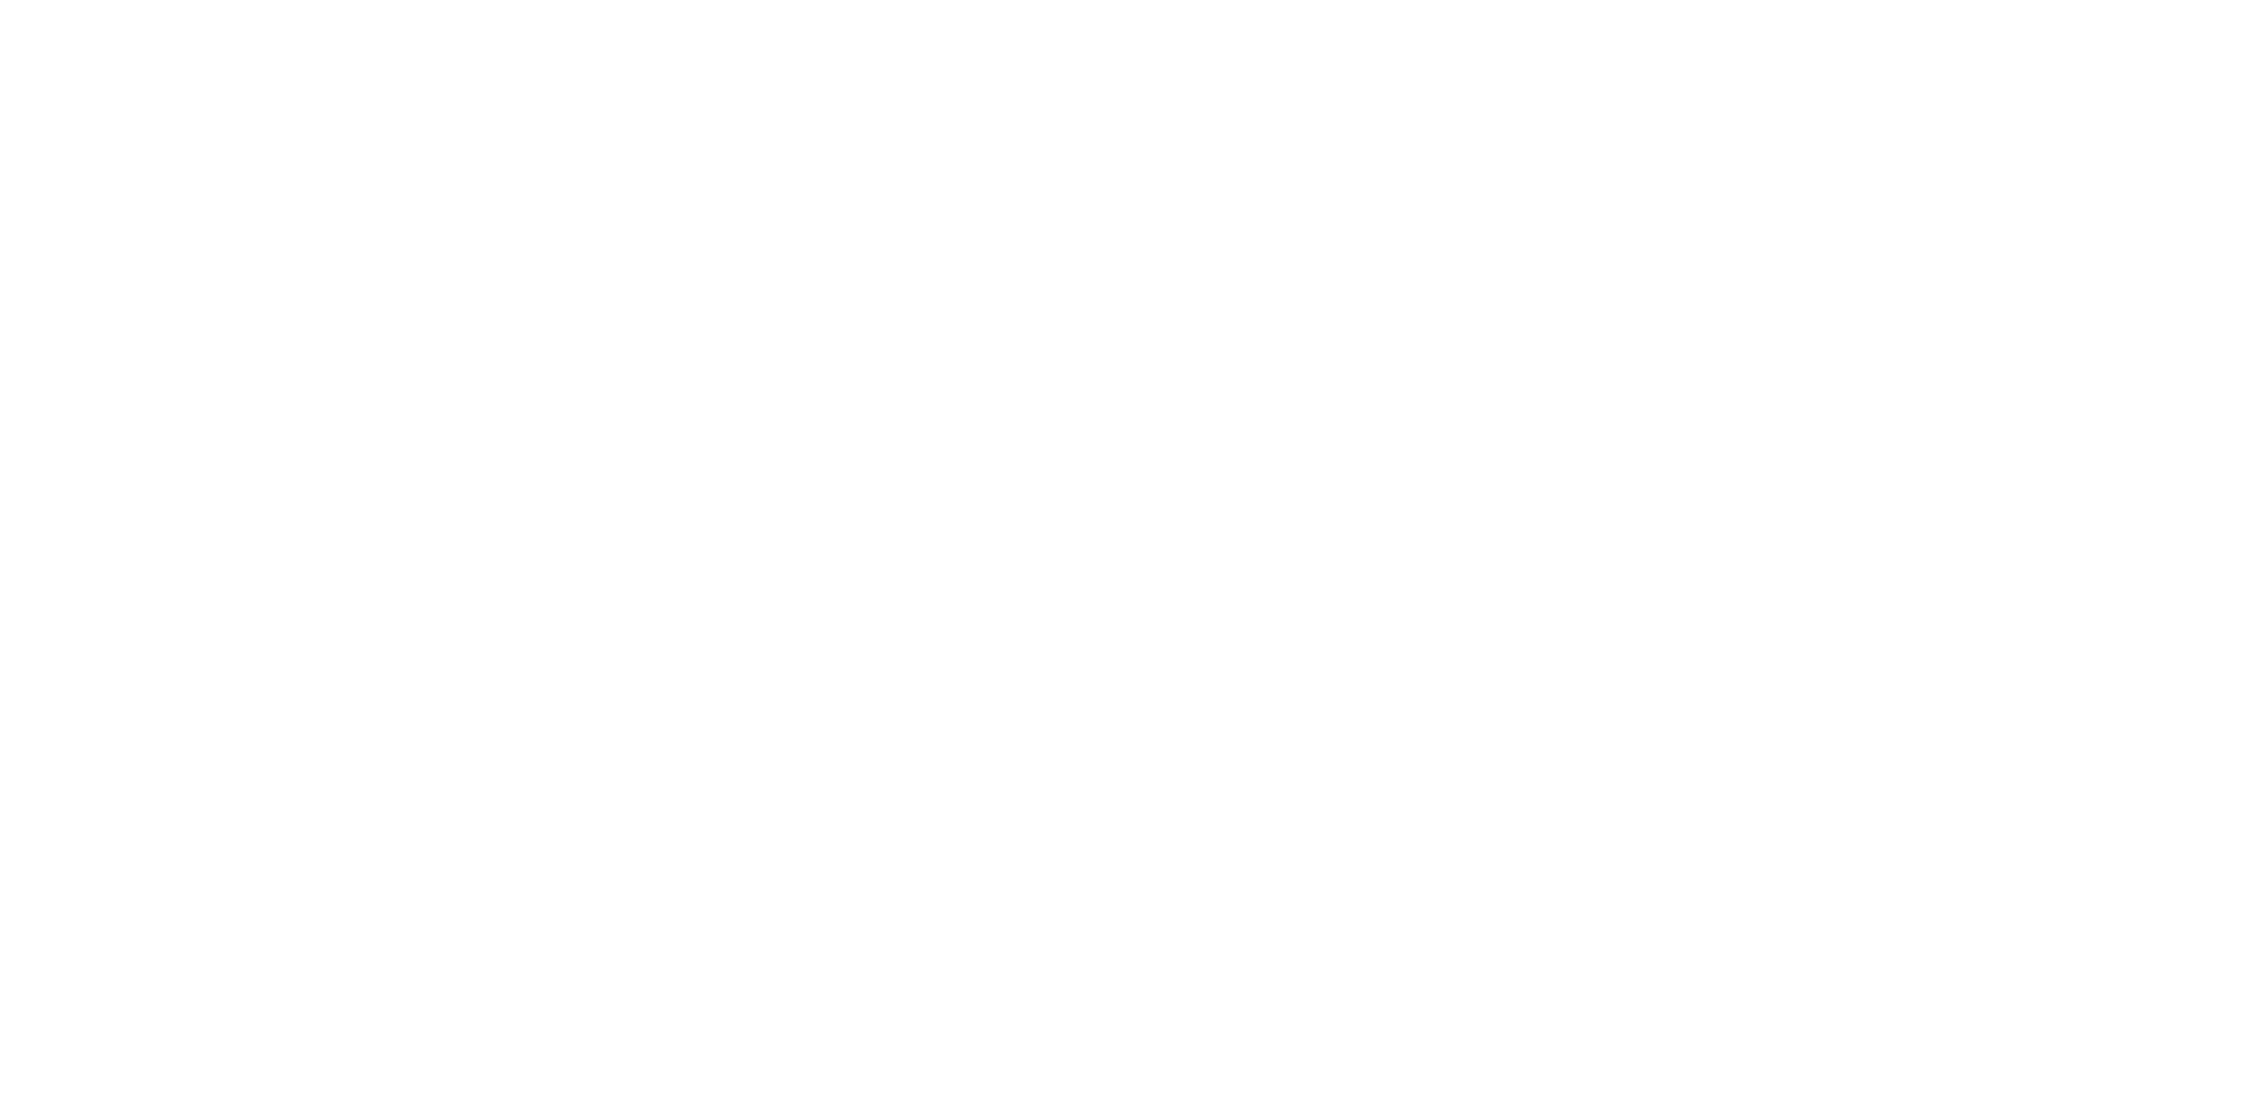 Logo MPC